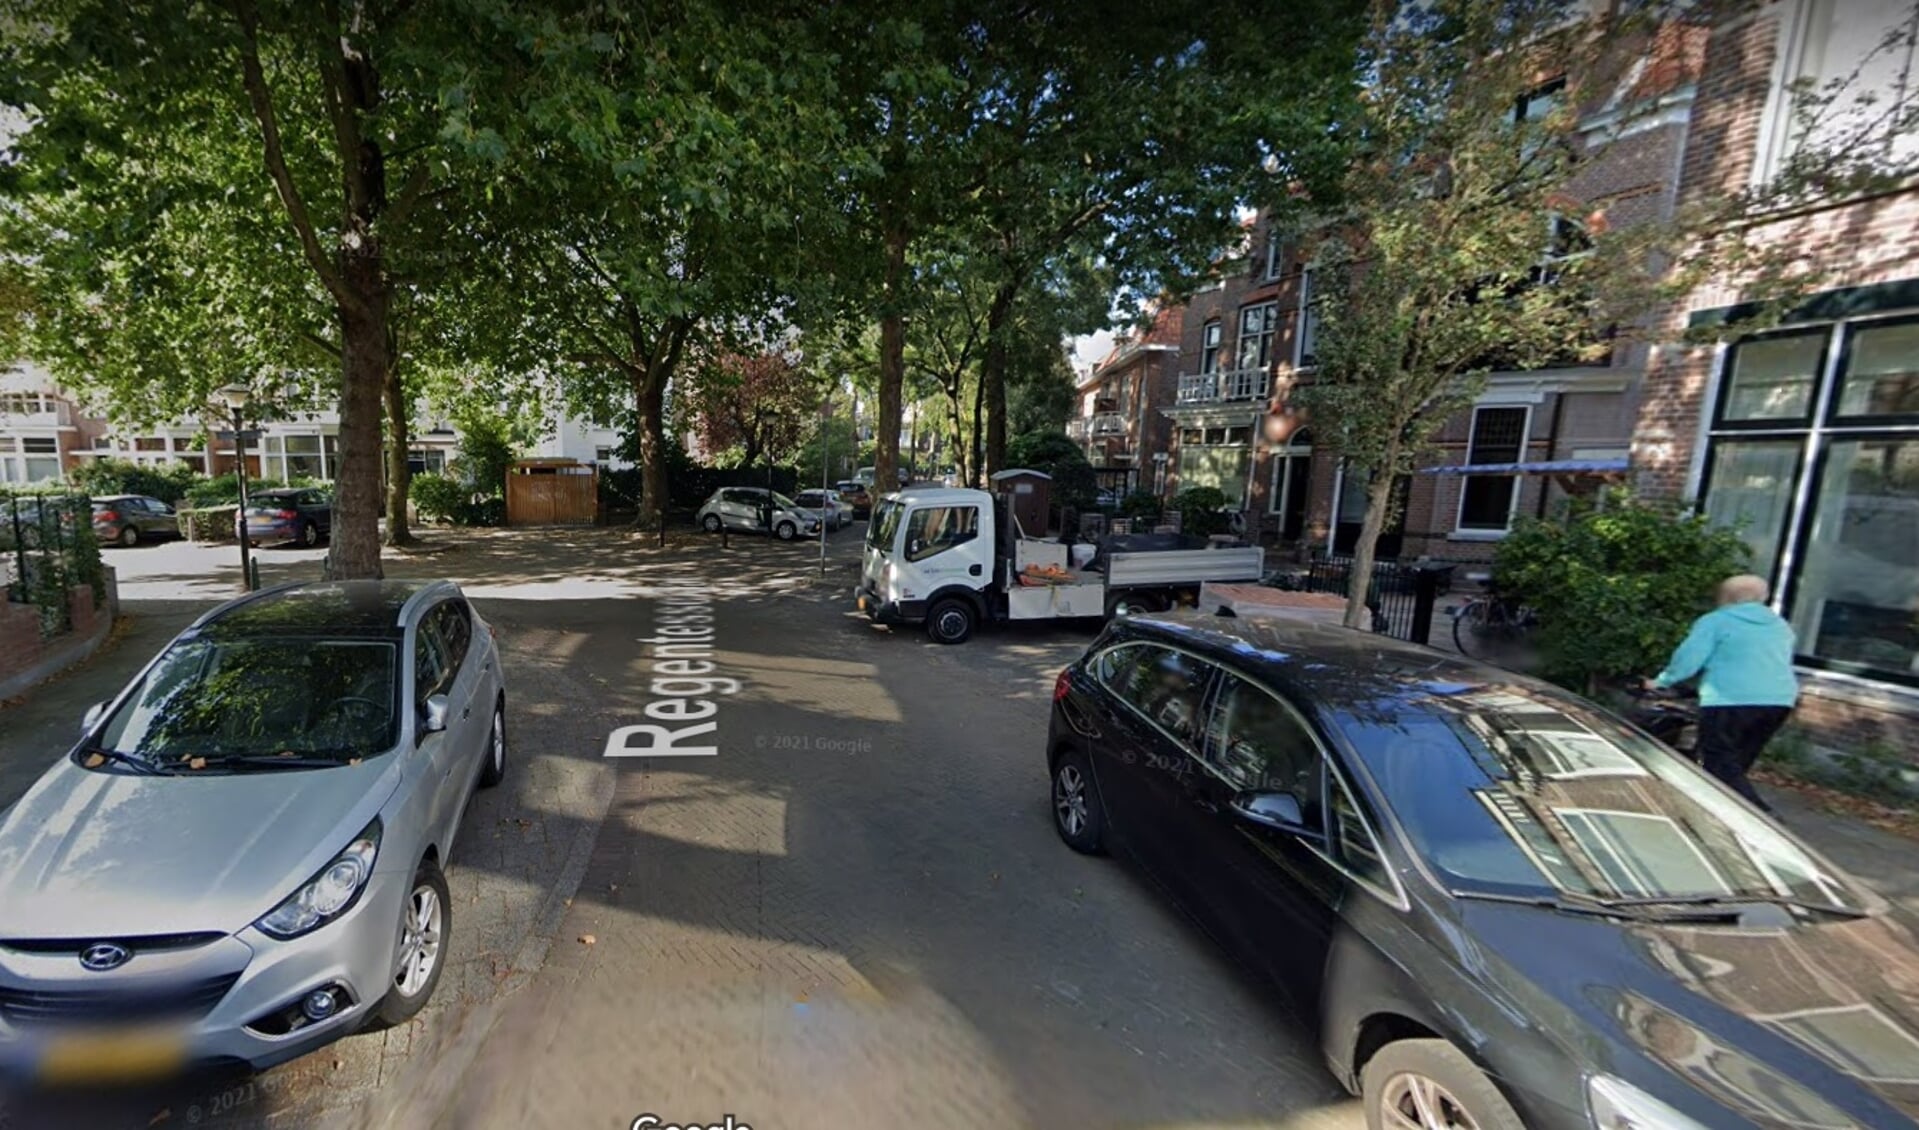 De melder beldde de politie naar aanleiding van glasgerinkel in de omgeving van de Regentesselaan in Rijswijk.